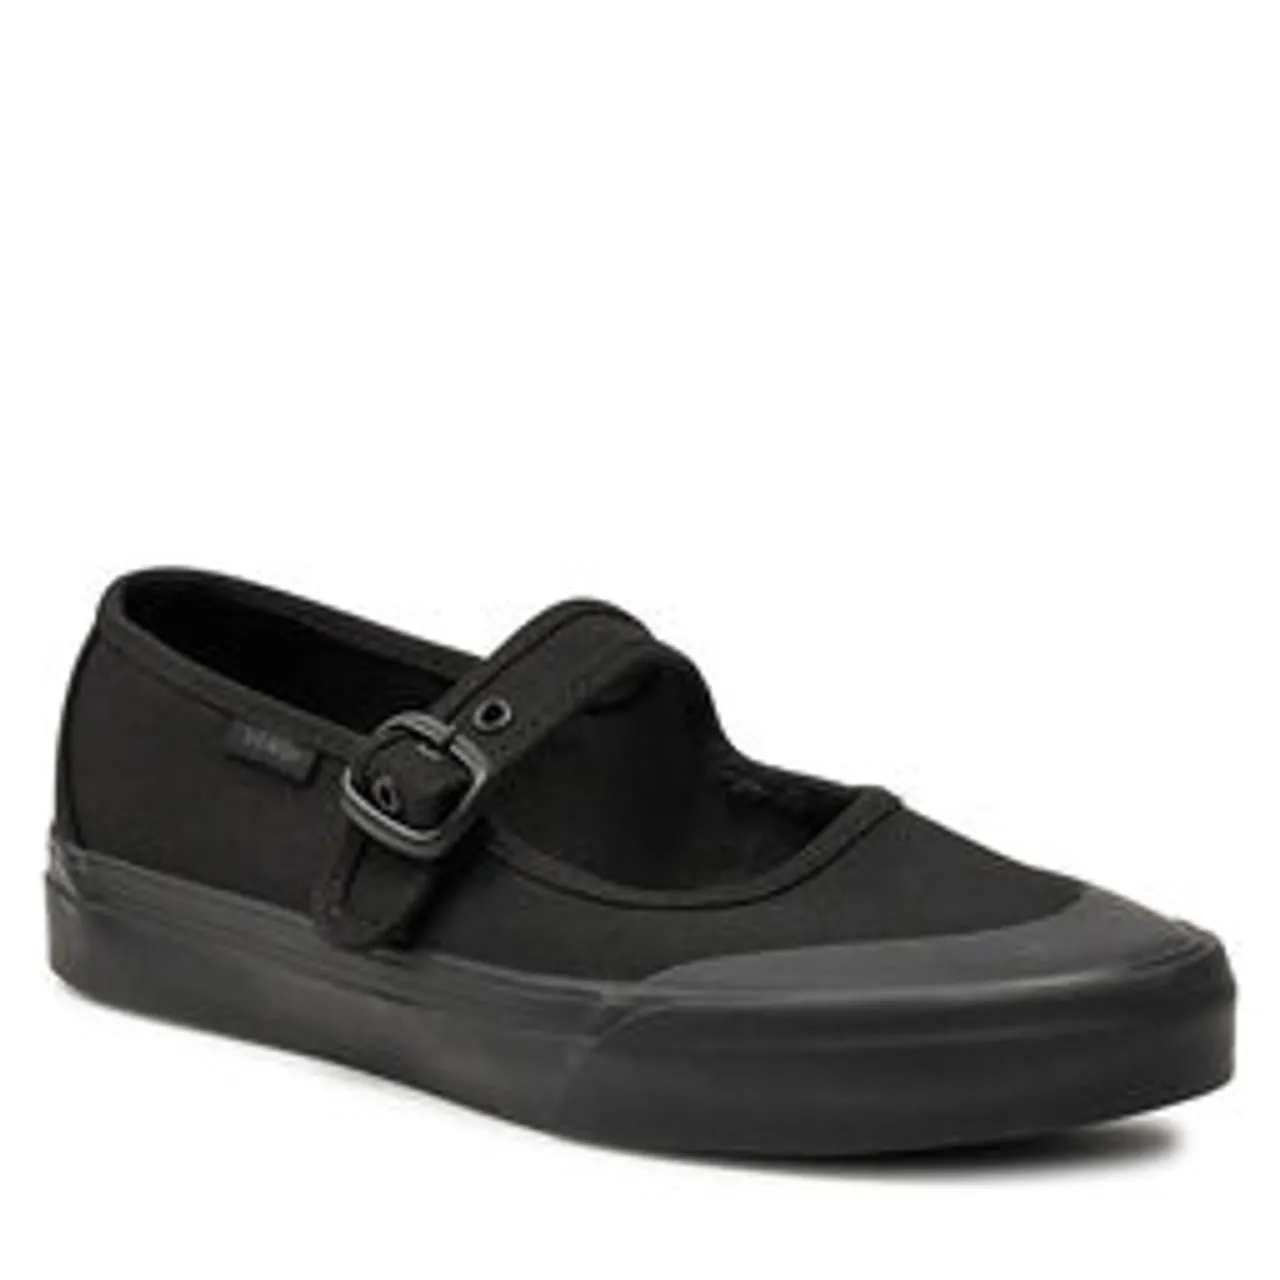 Sneakers aus Stoff Vans Mary Jane VN000CRRBJ41 Black/Black/Black